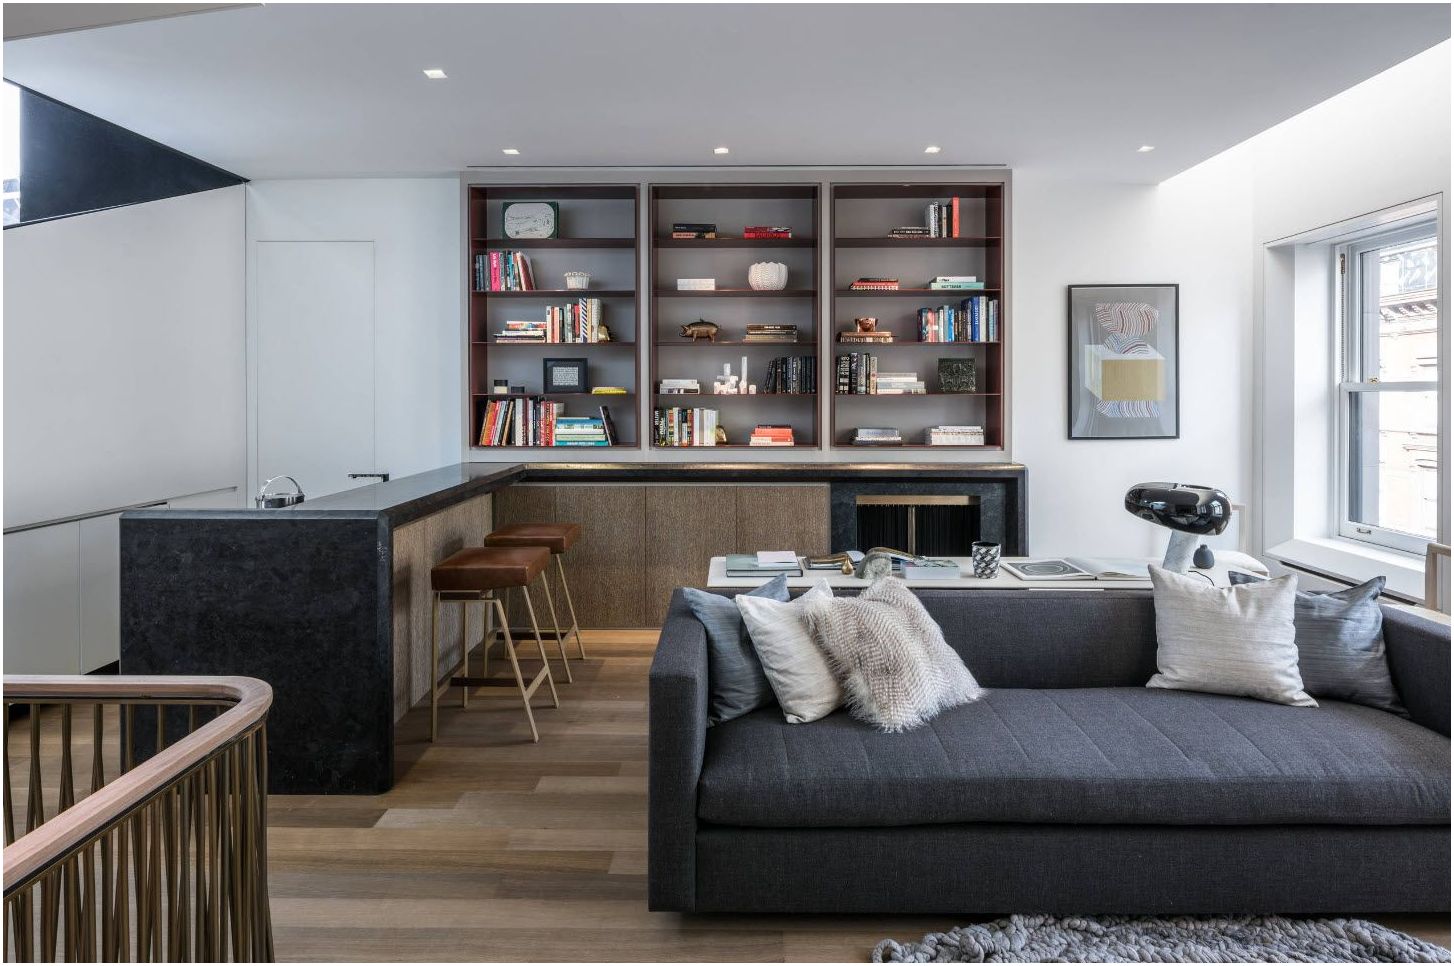 Obývací pokoj 14 m2. m: výběr nejlepších řešení pro organizování malých hal